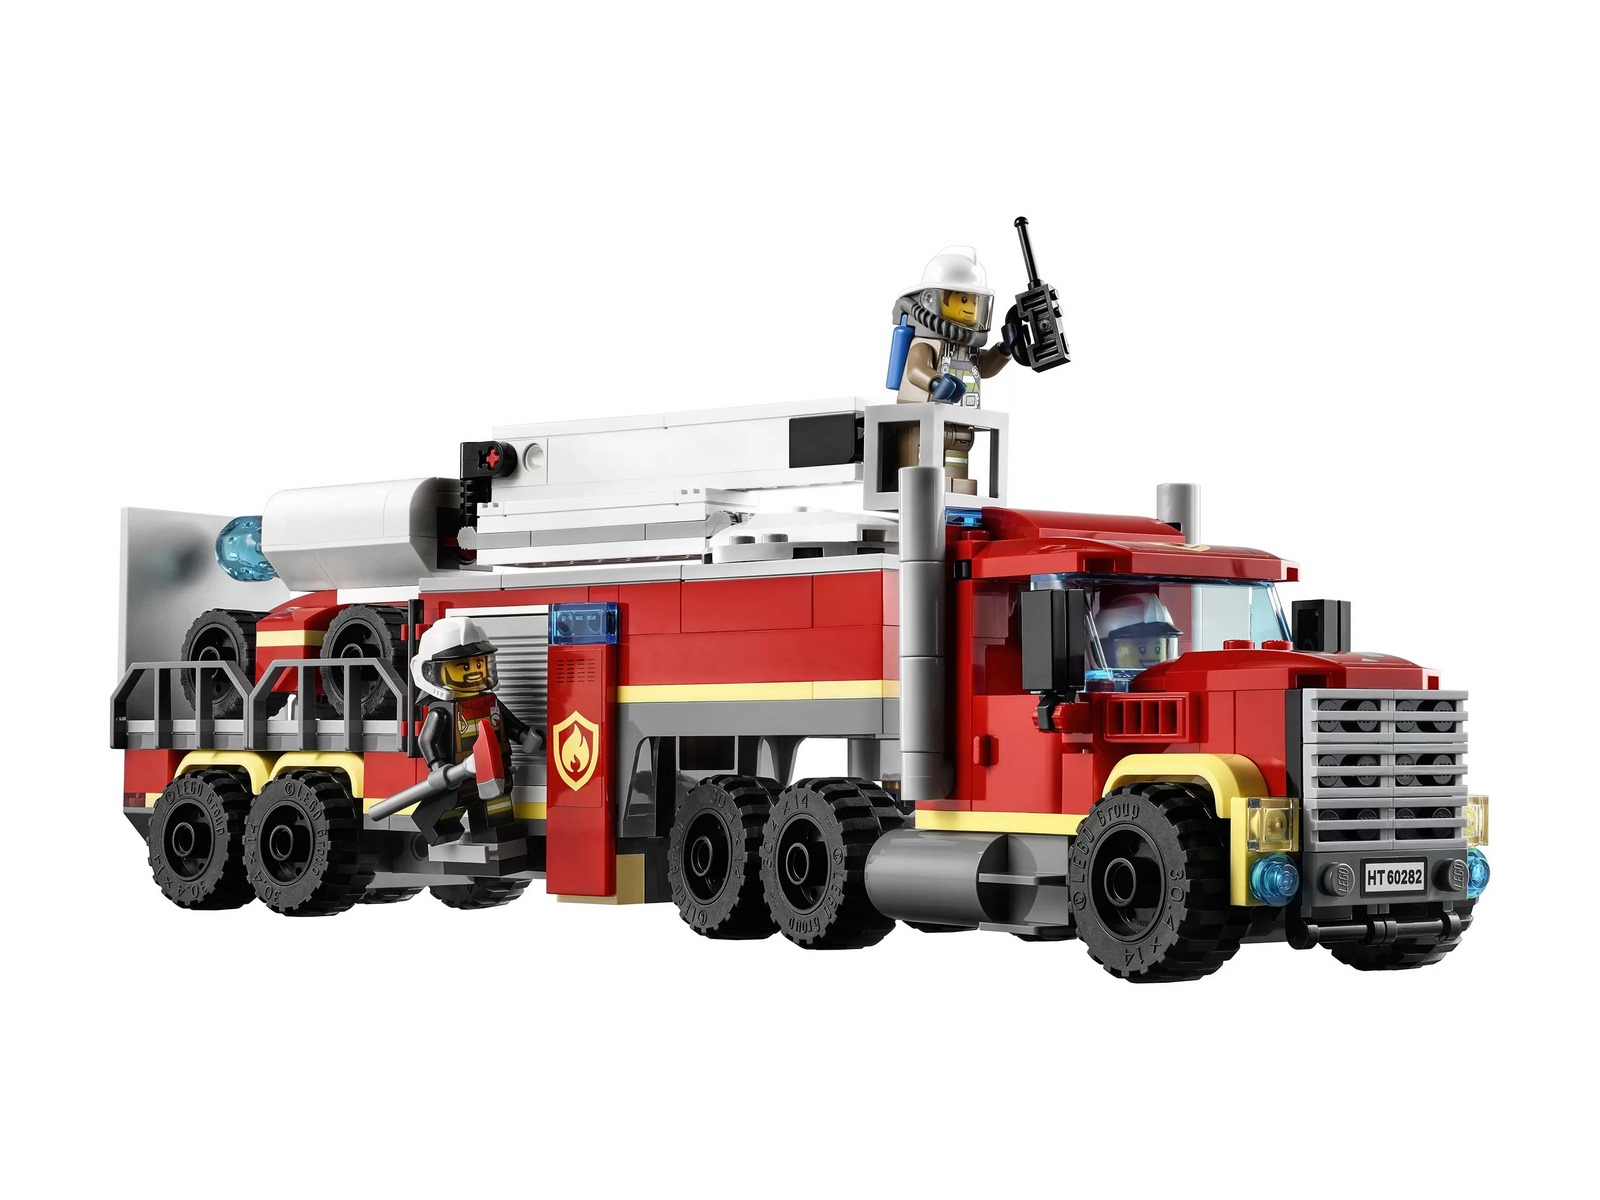 Конструктор LEGO City Fire «Команда пожарных» 60282 / 380 деталей